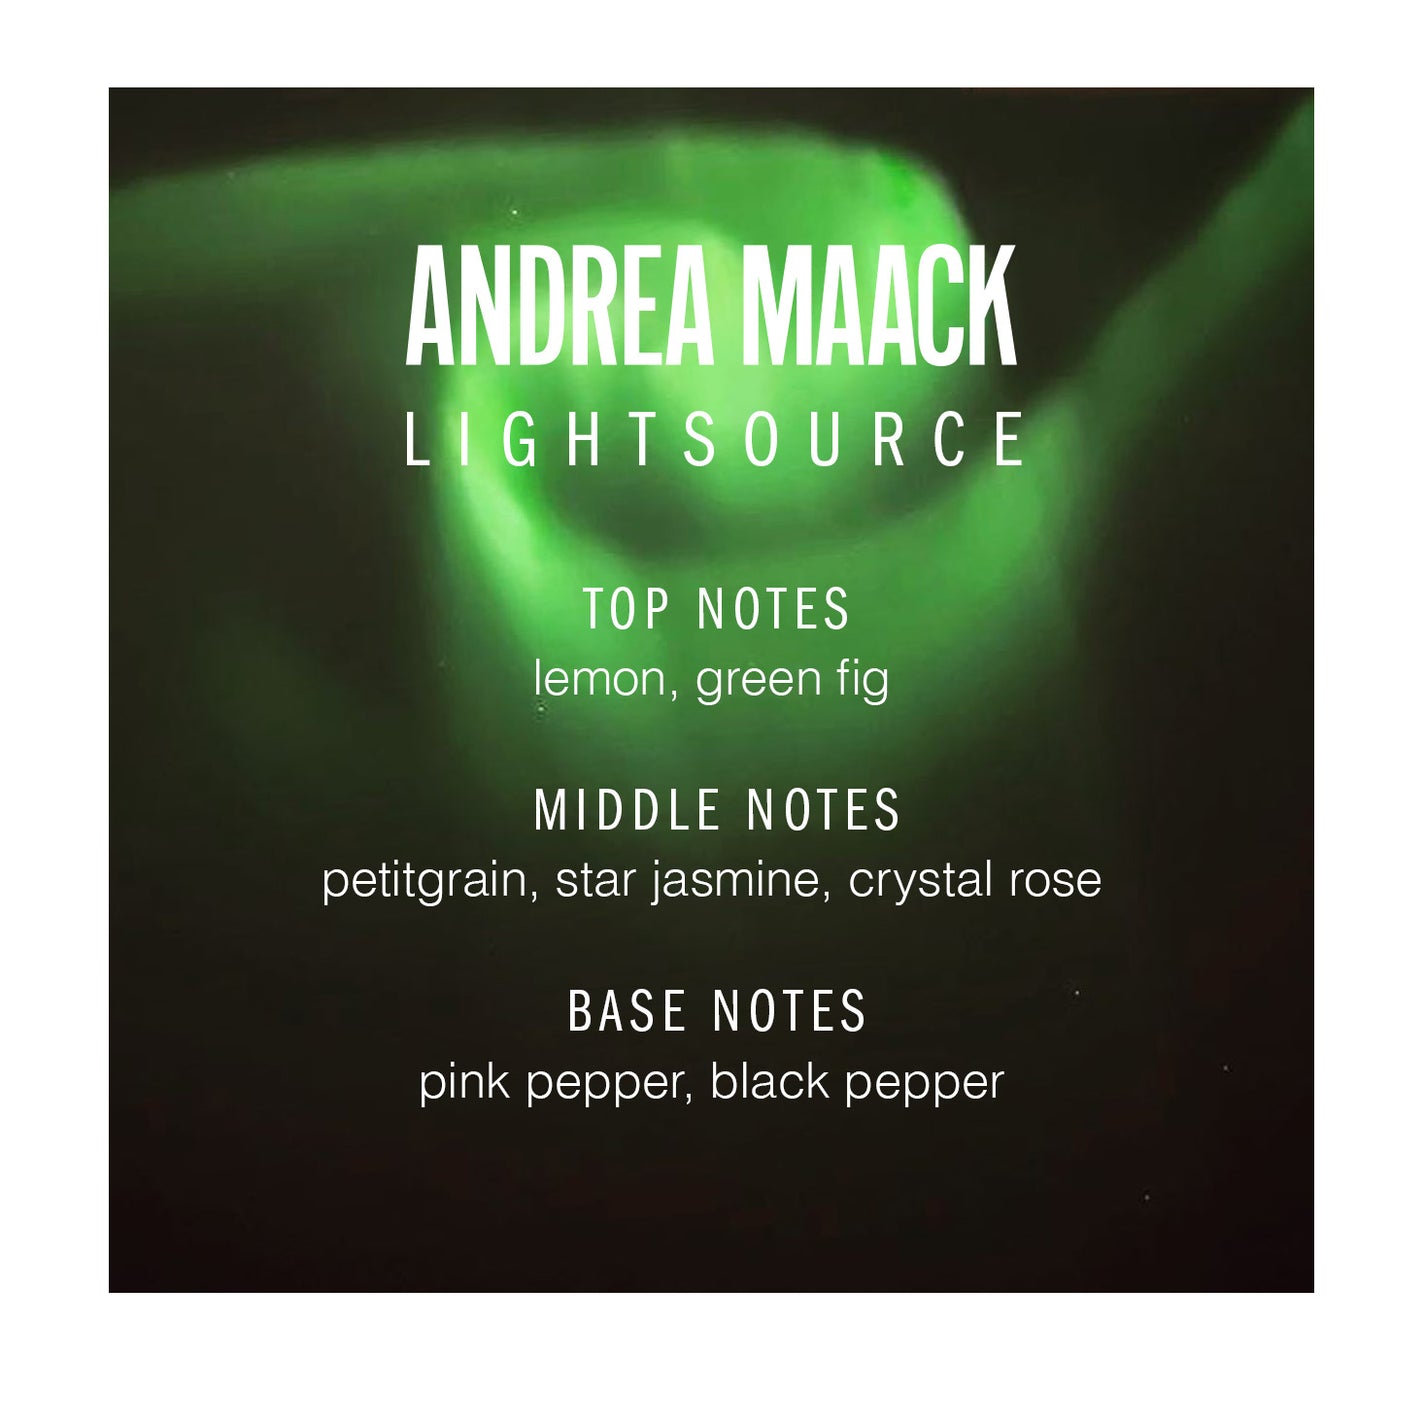 Sample Vial - Andrea Maack Lightsource Eau de Parfum